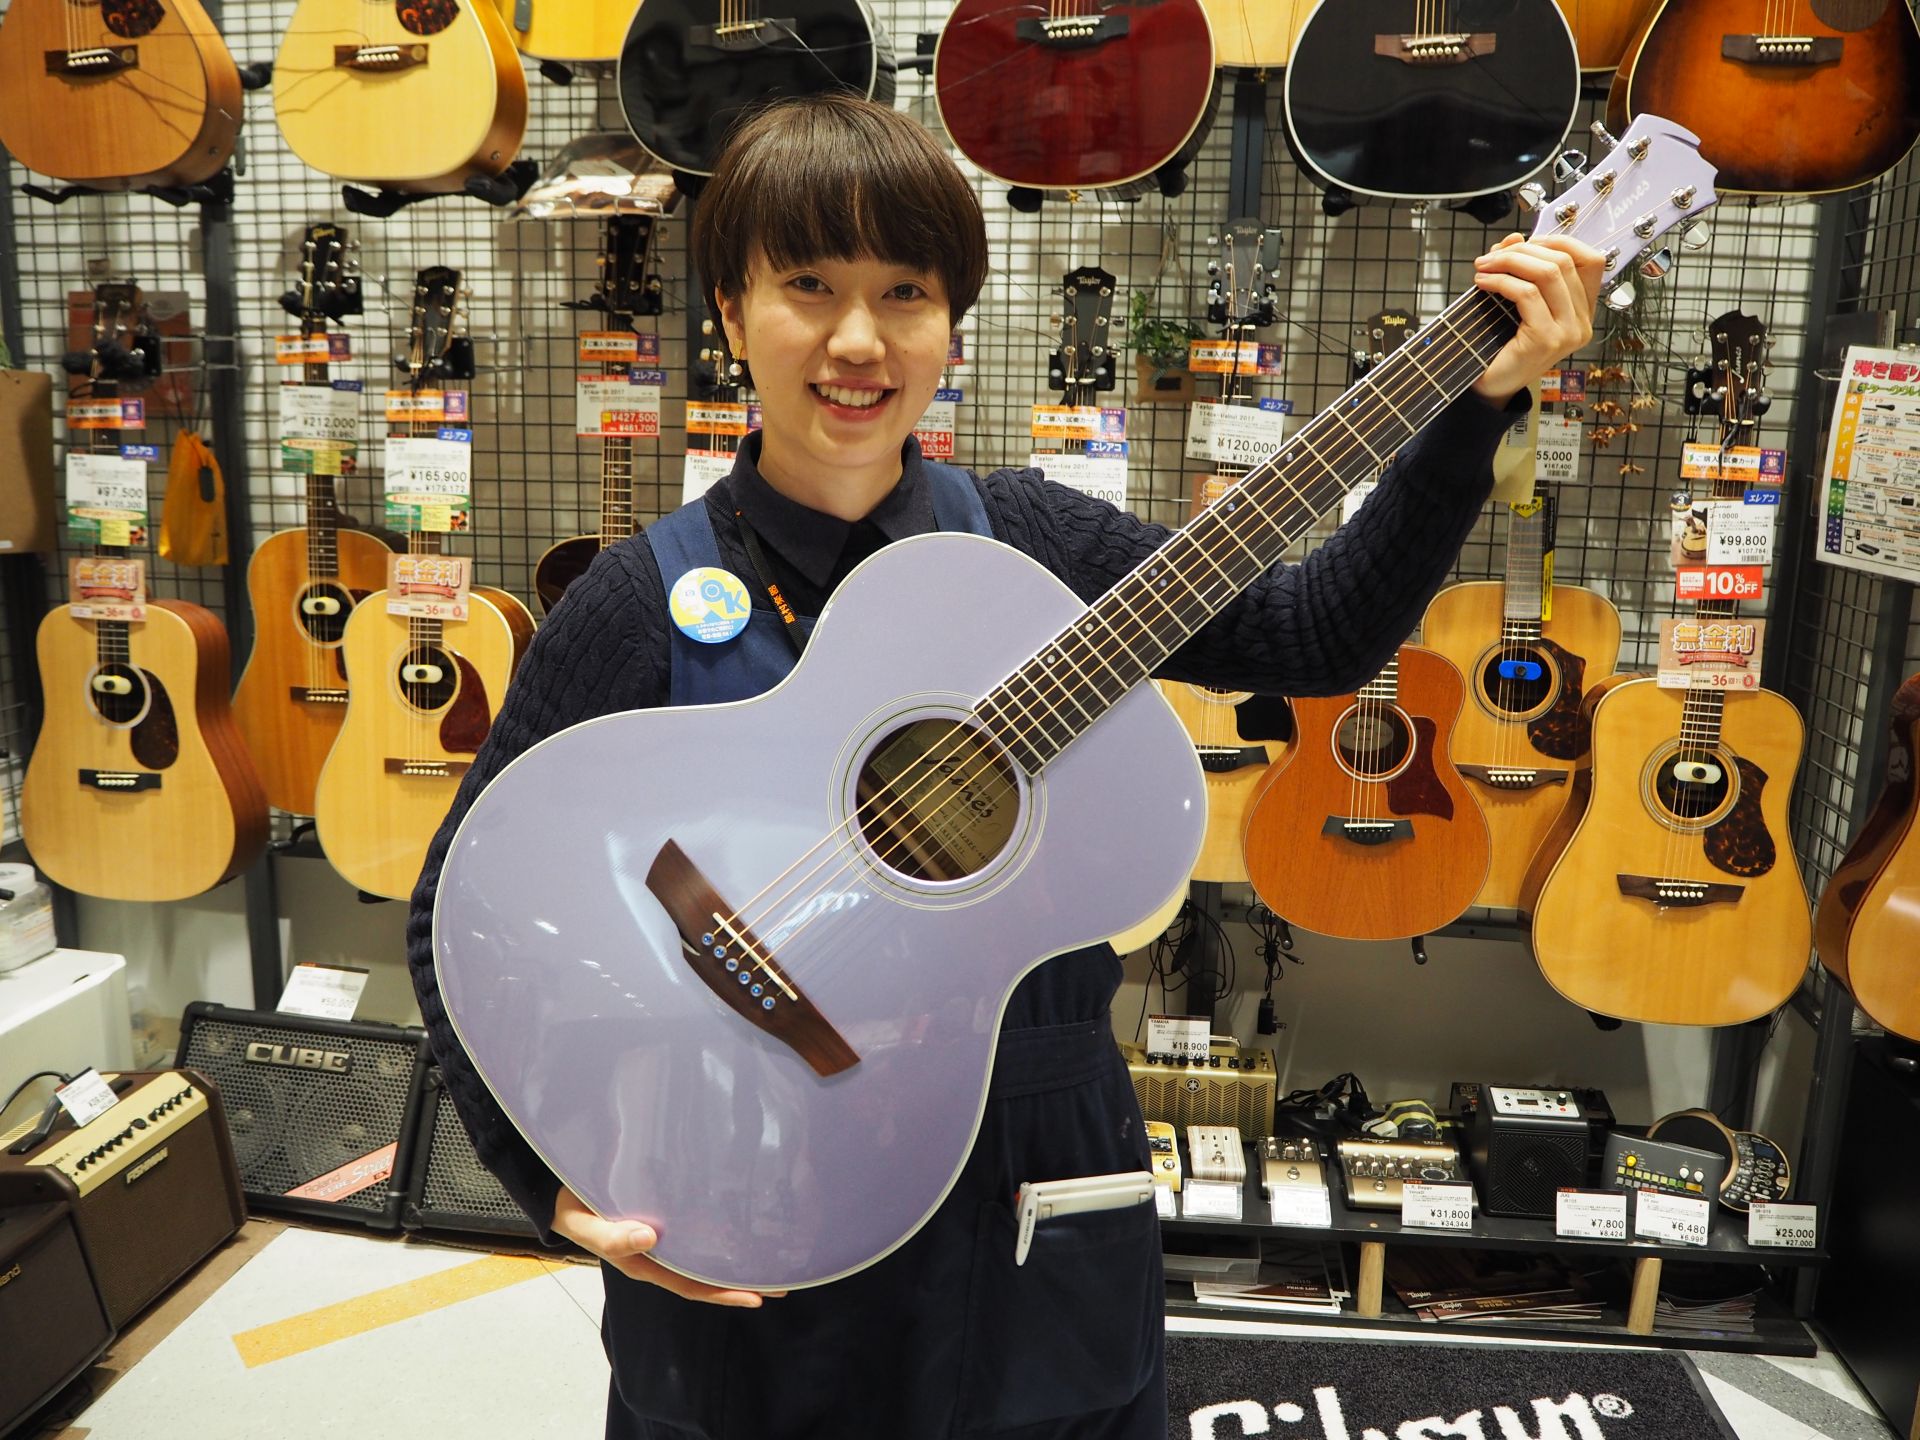 アコースティックギター 新入荷 春らしいカラーで可愛いアコースティックギターj 500a Spcが入荷しました 限定商品 島村楽器 イオンモール神戸北店